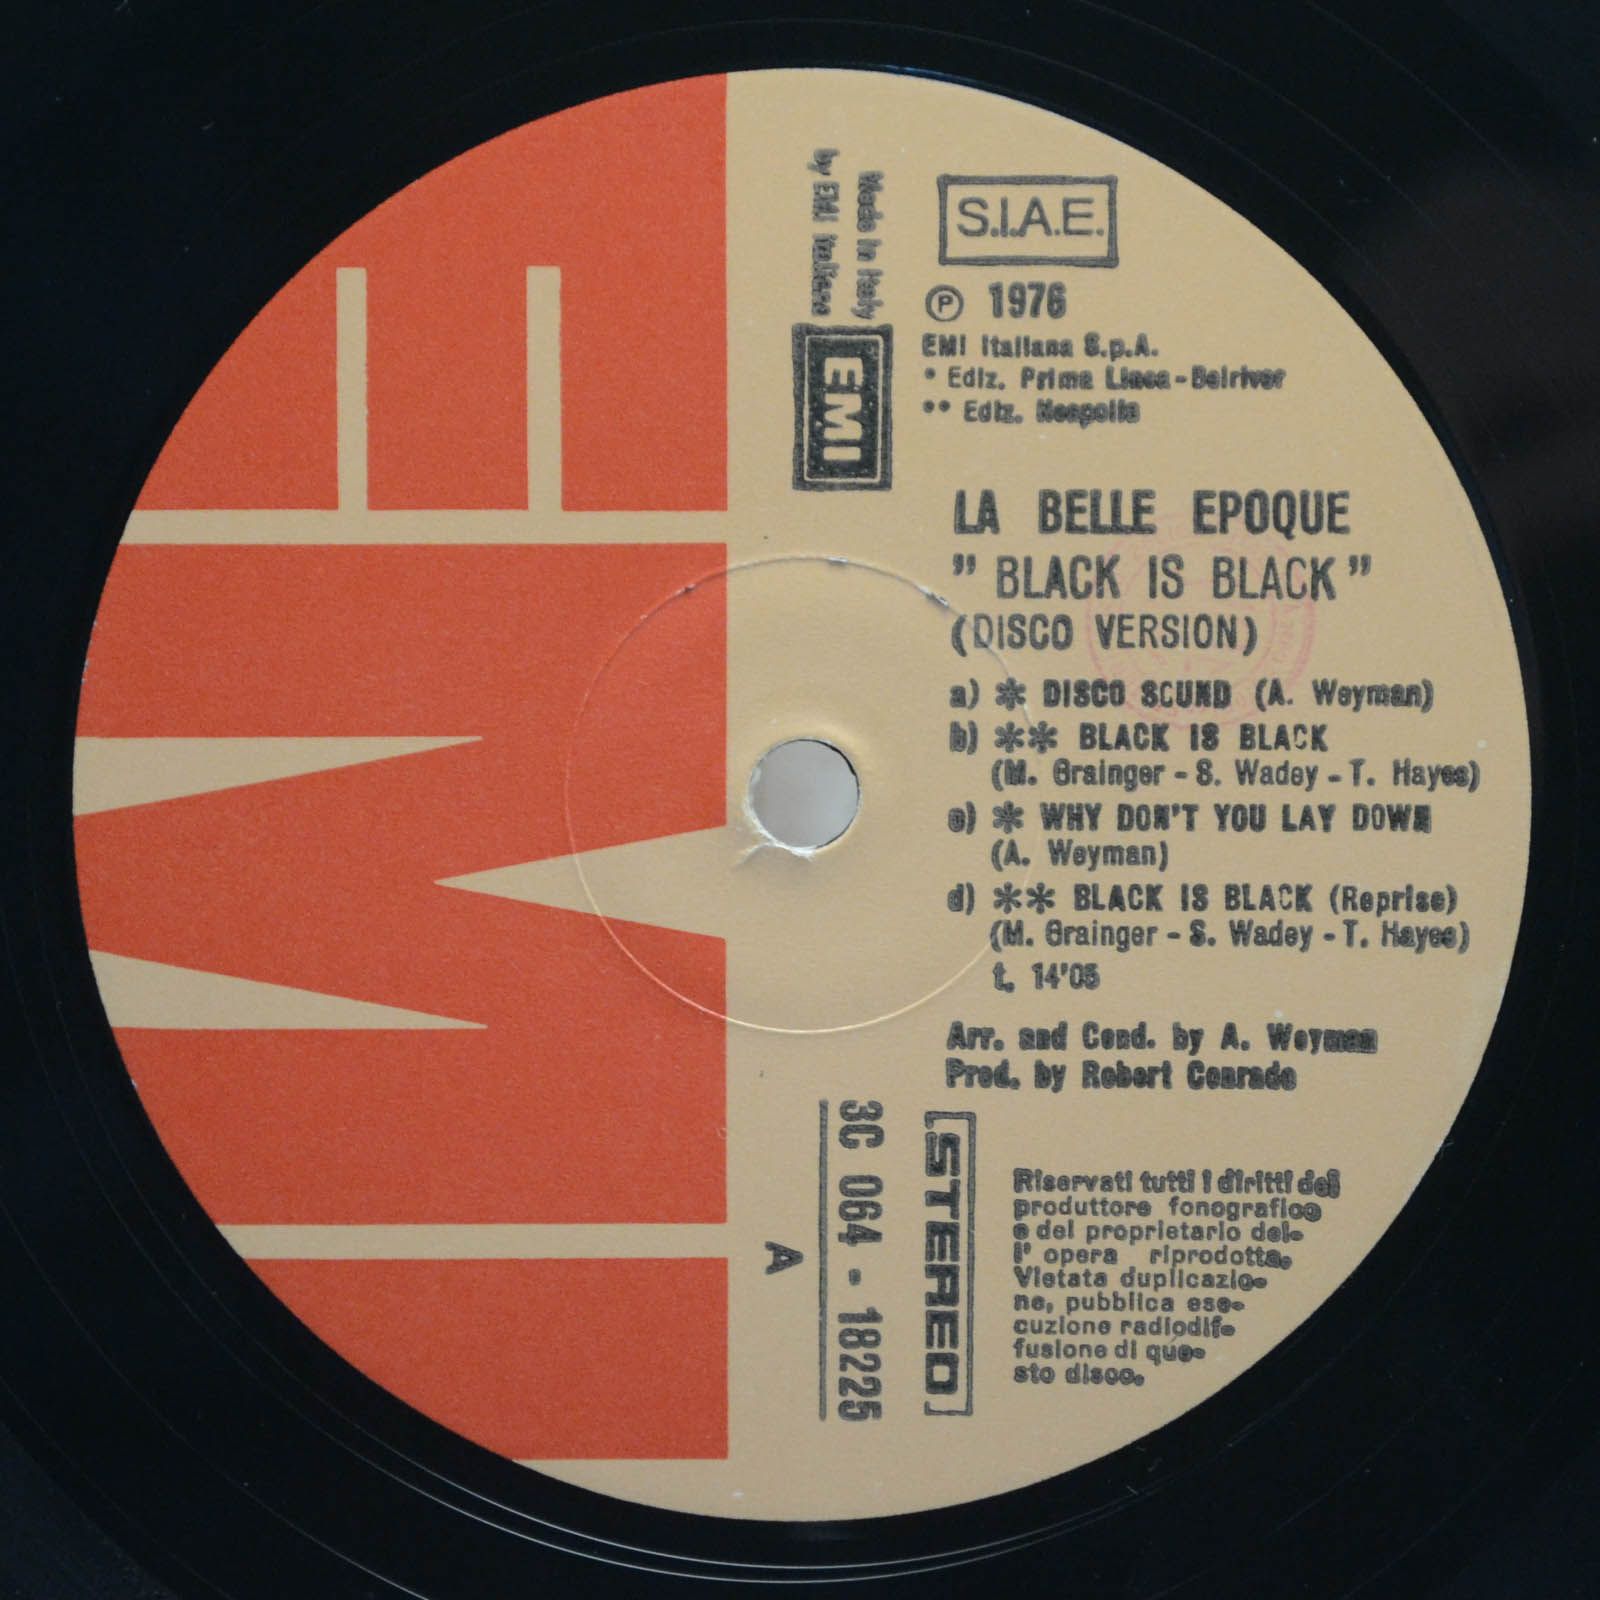 La Belle Epoque — Black Is Black, 1976